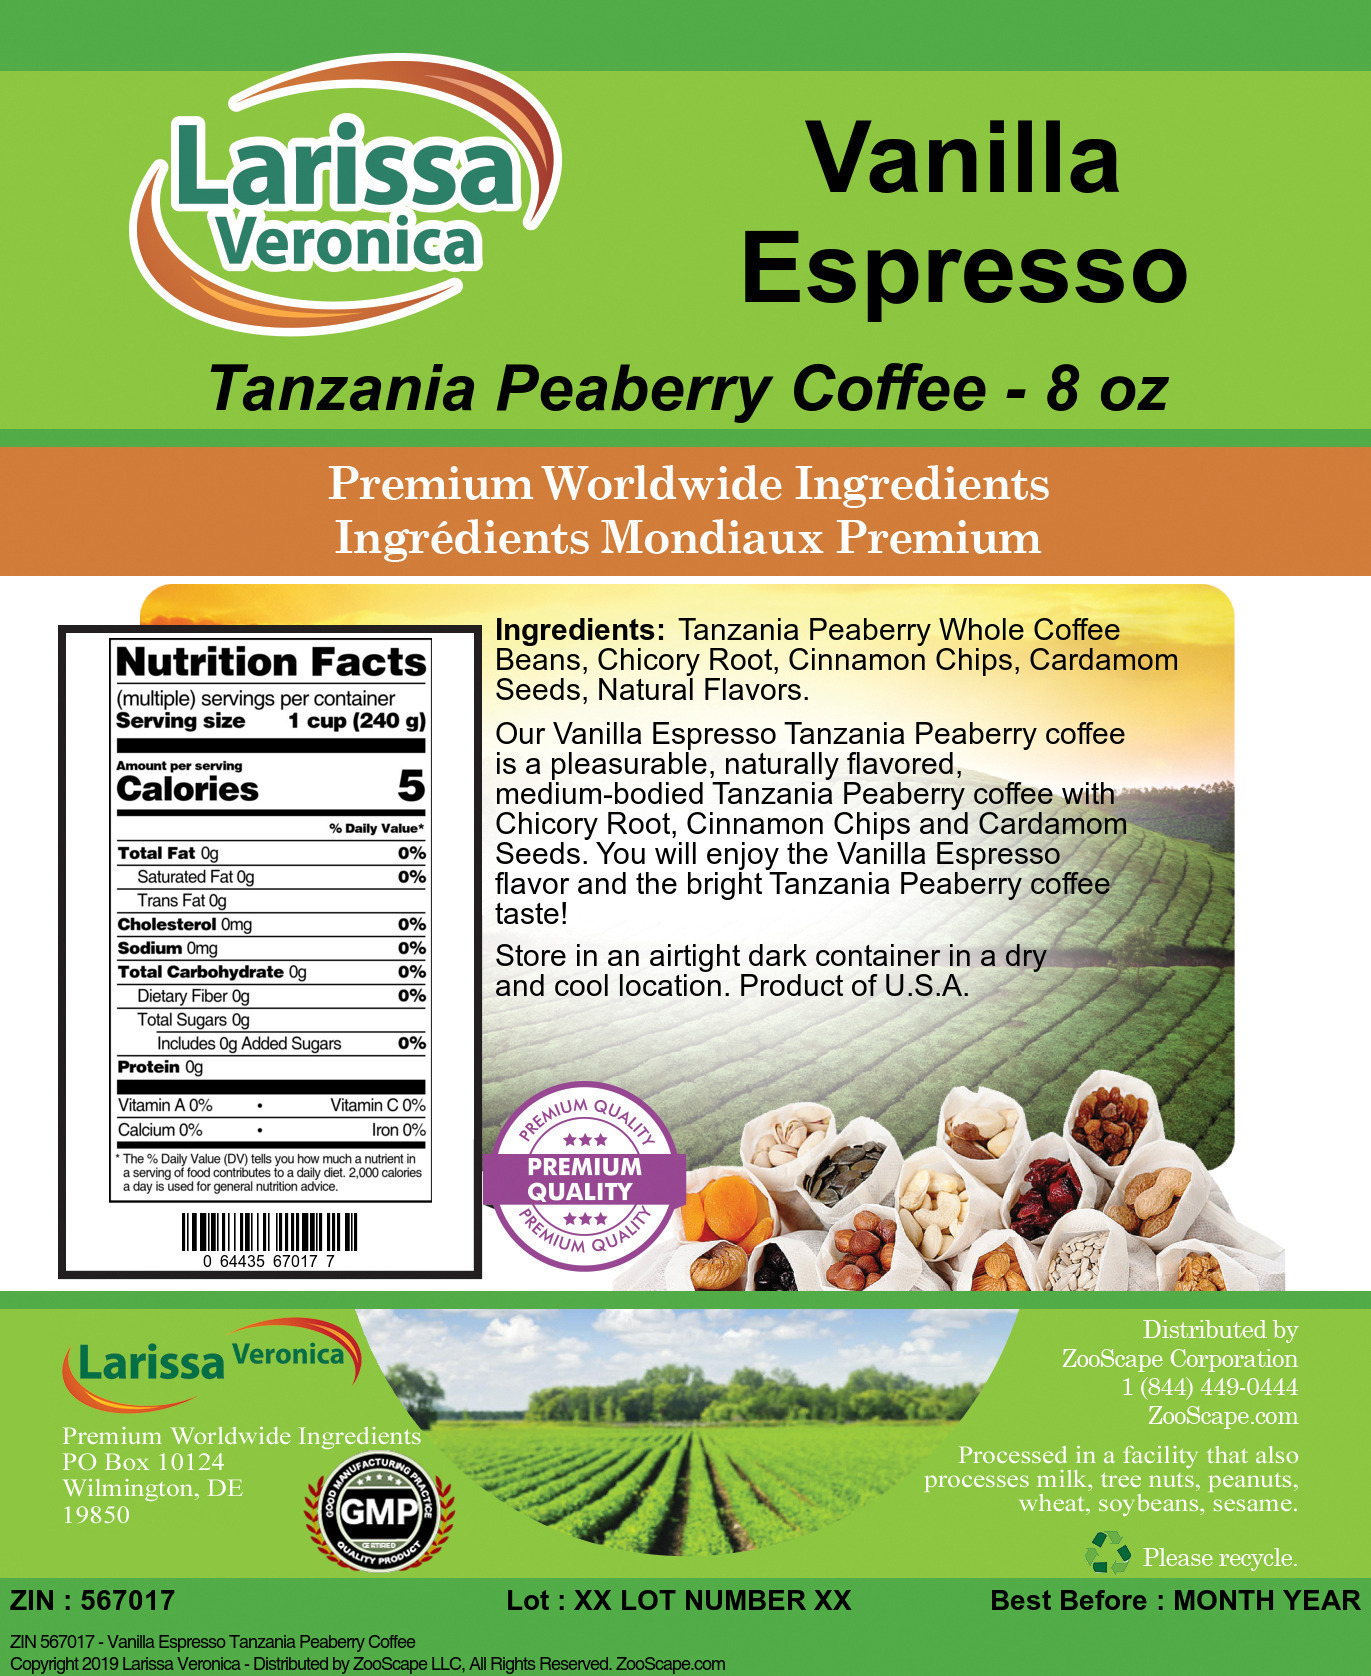 Vanilla Espresso Tanzania Peaberry Coffee - Label